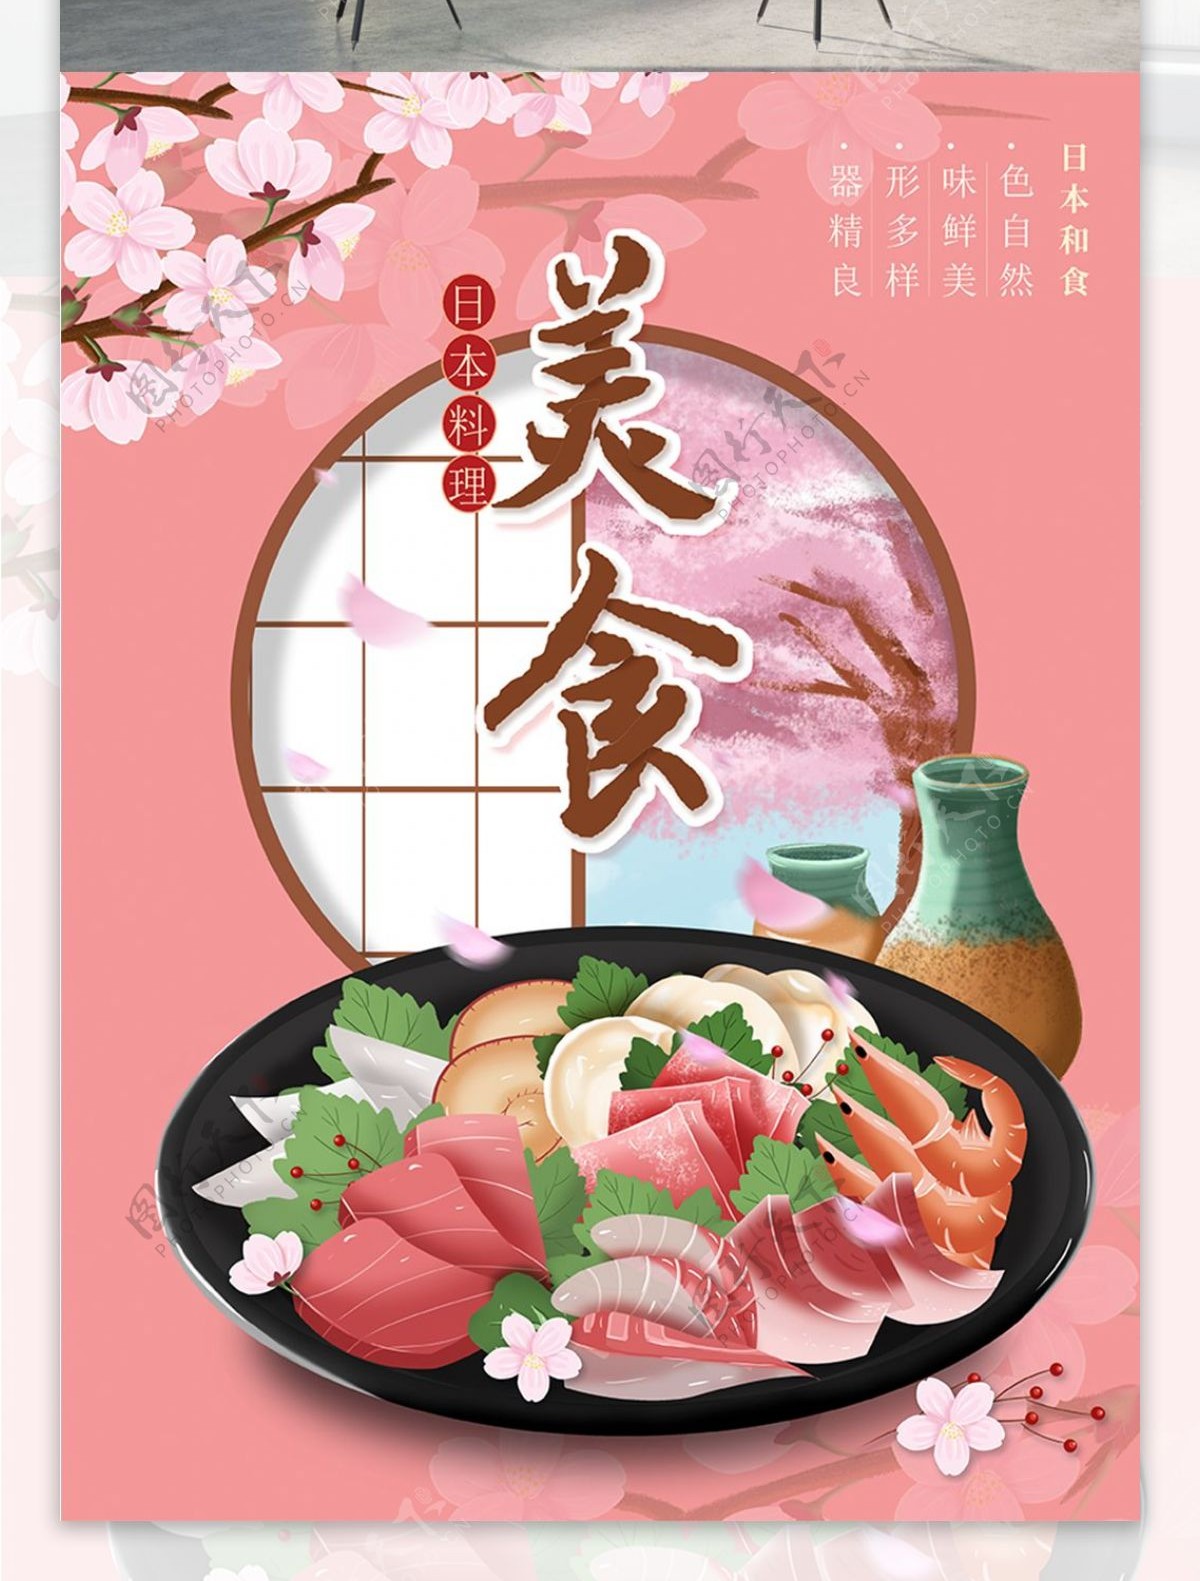 原创插画日本料理美食海报